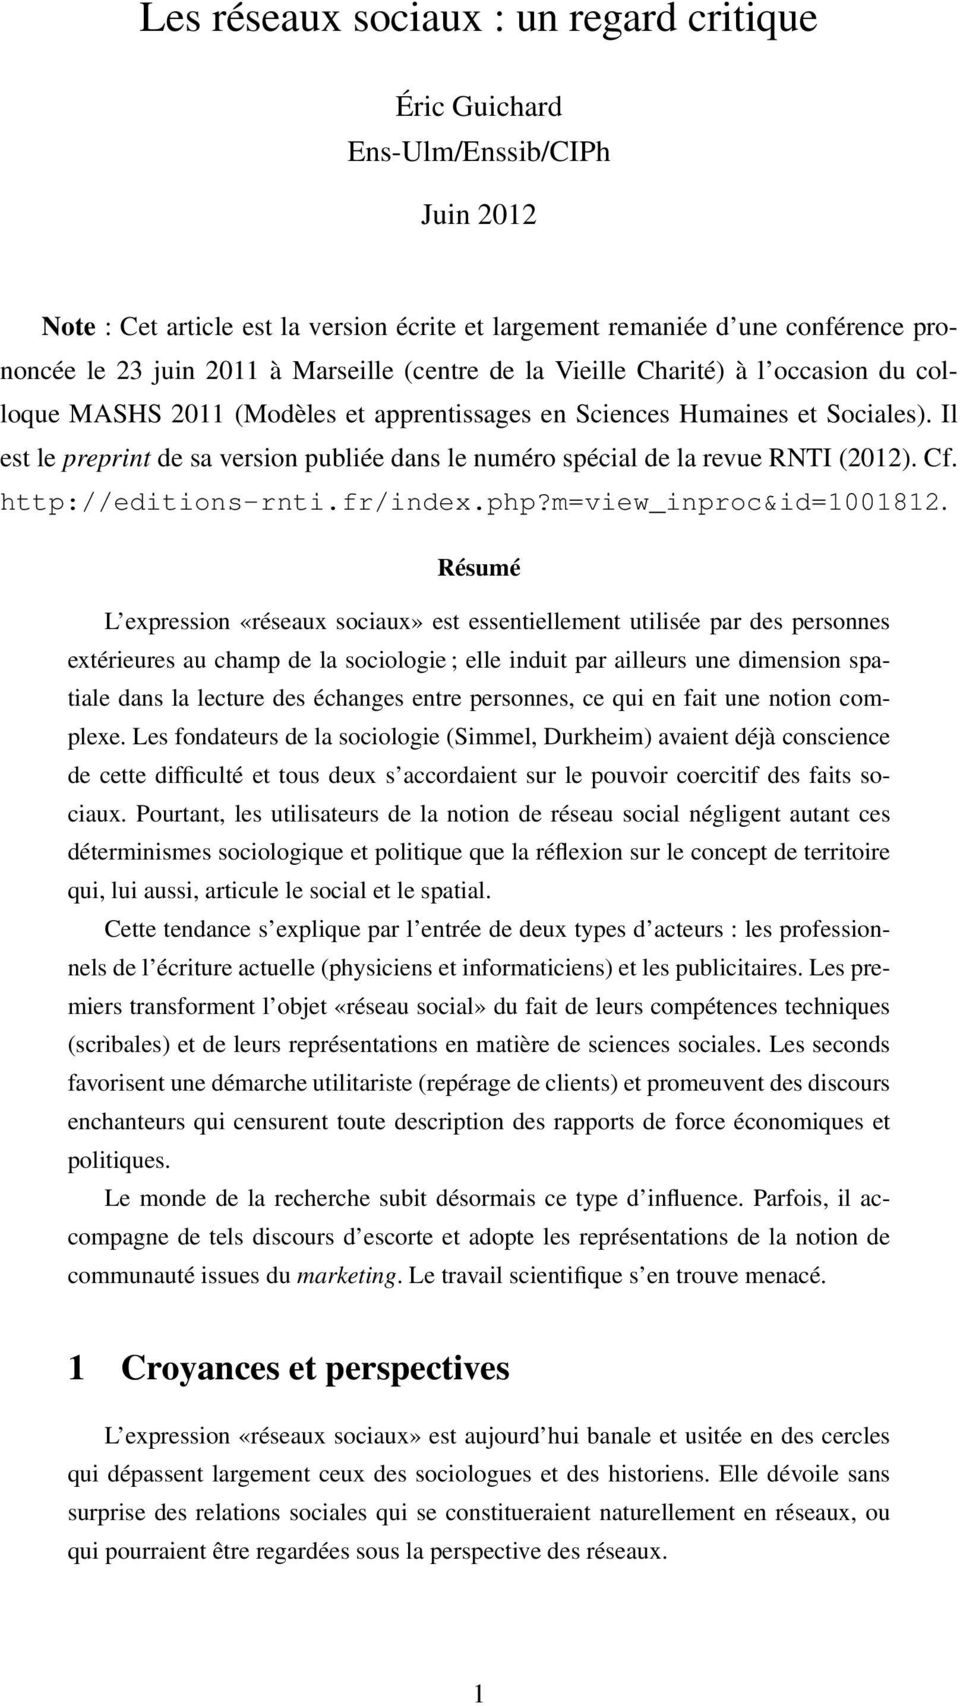 Il est le preprint de sa version publiée dans le numéro spécial de la revue RNTI (2012). Cf. http://editions-rnti.fr/index.php?m=view_inproc&id=1001812.